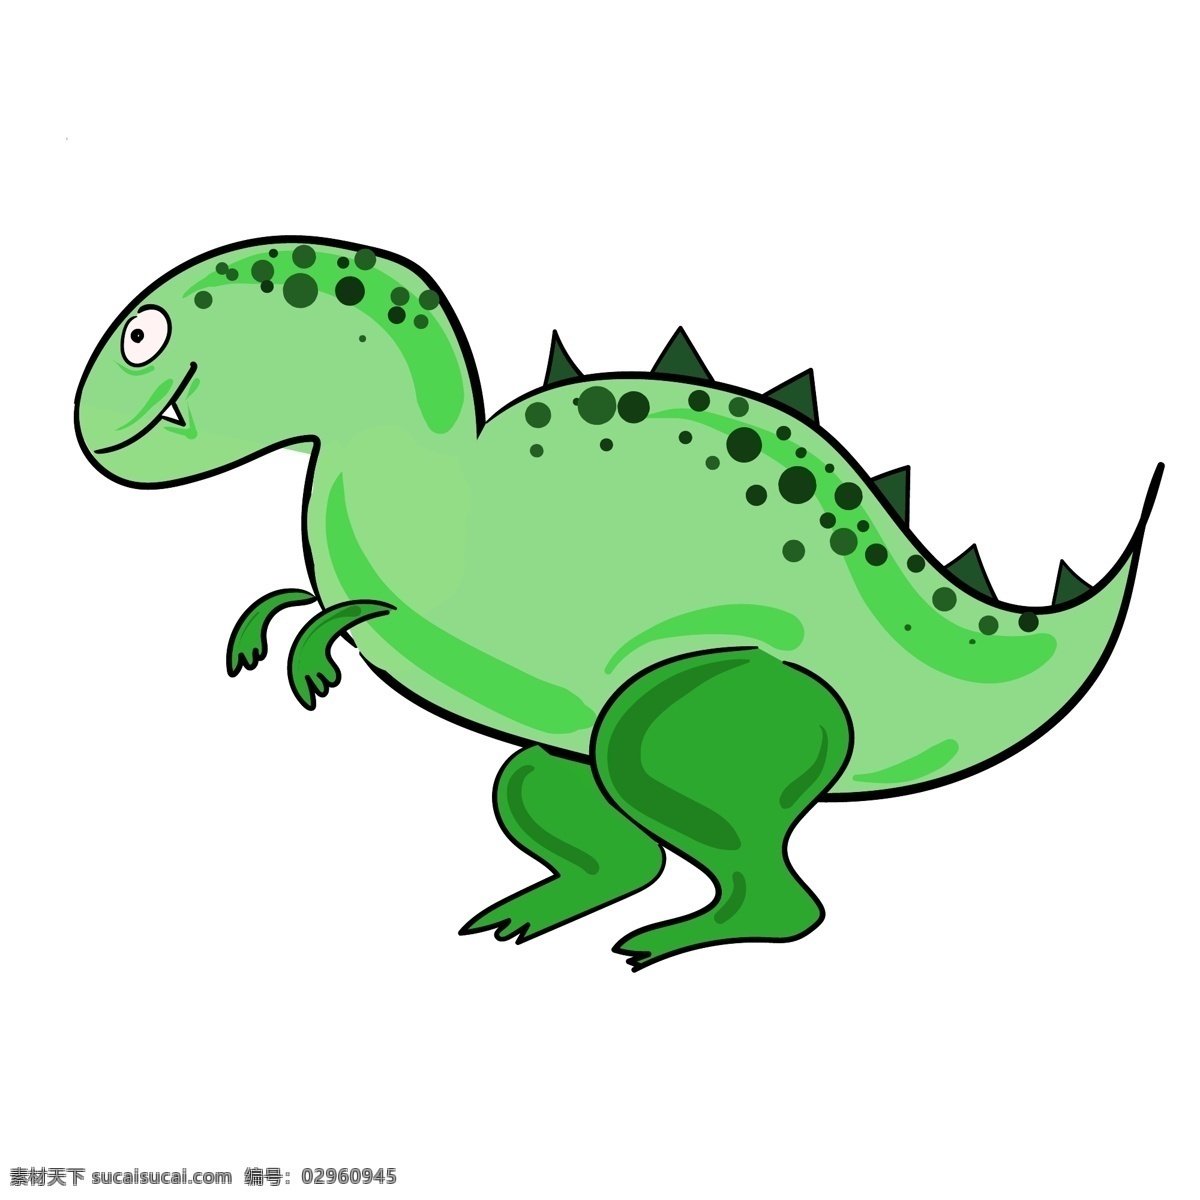 儿童节 玩具 恐龙 插画 绿色的恐龙 卡通插画 儿童节插画 儿童节玩具 儿童节物品 儿童的器材 霸王龙恐龙